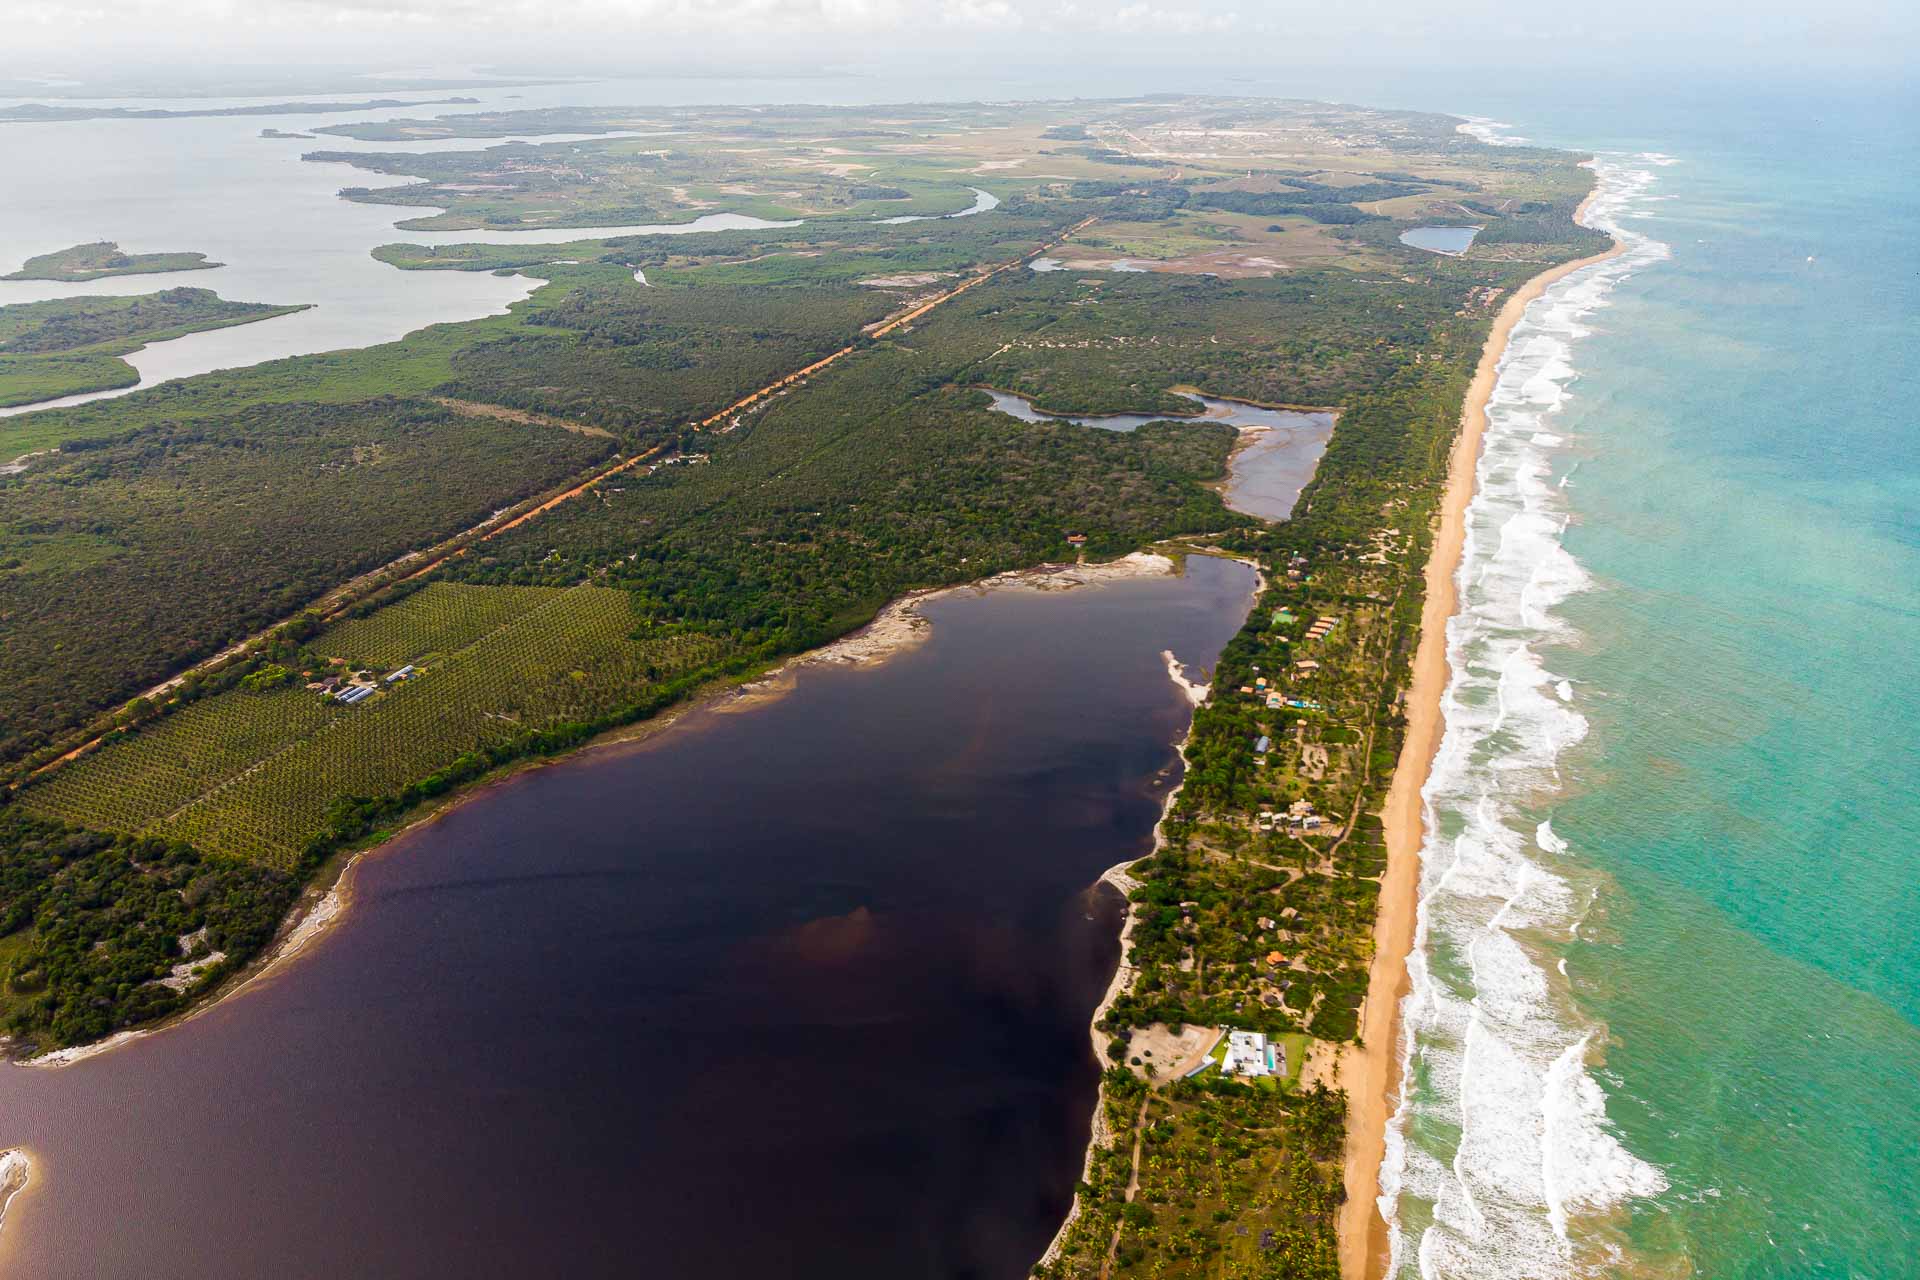 Vista aérea da Península de Maraú com o mar e as lagoas